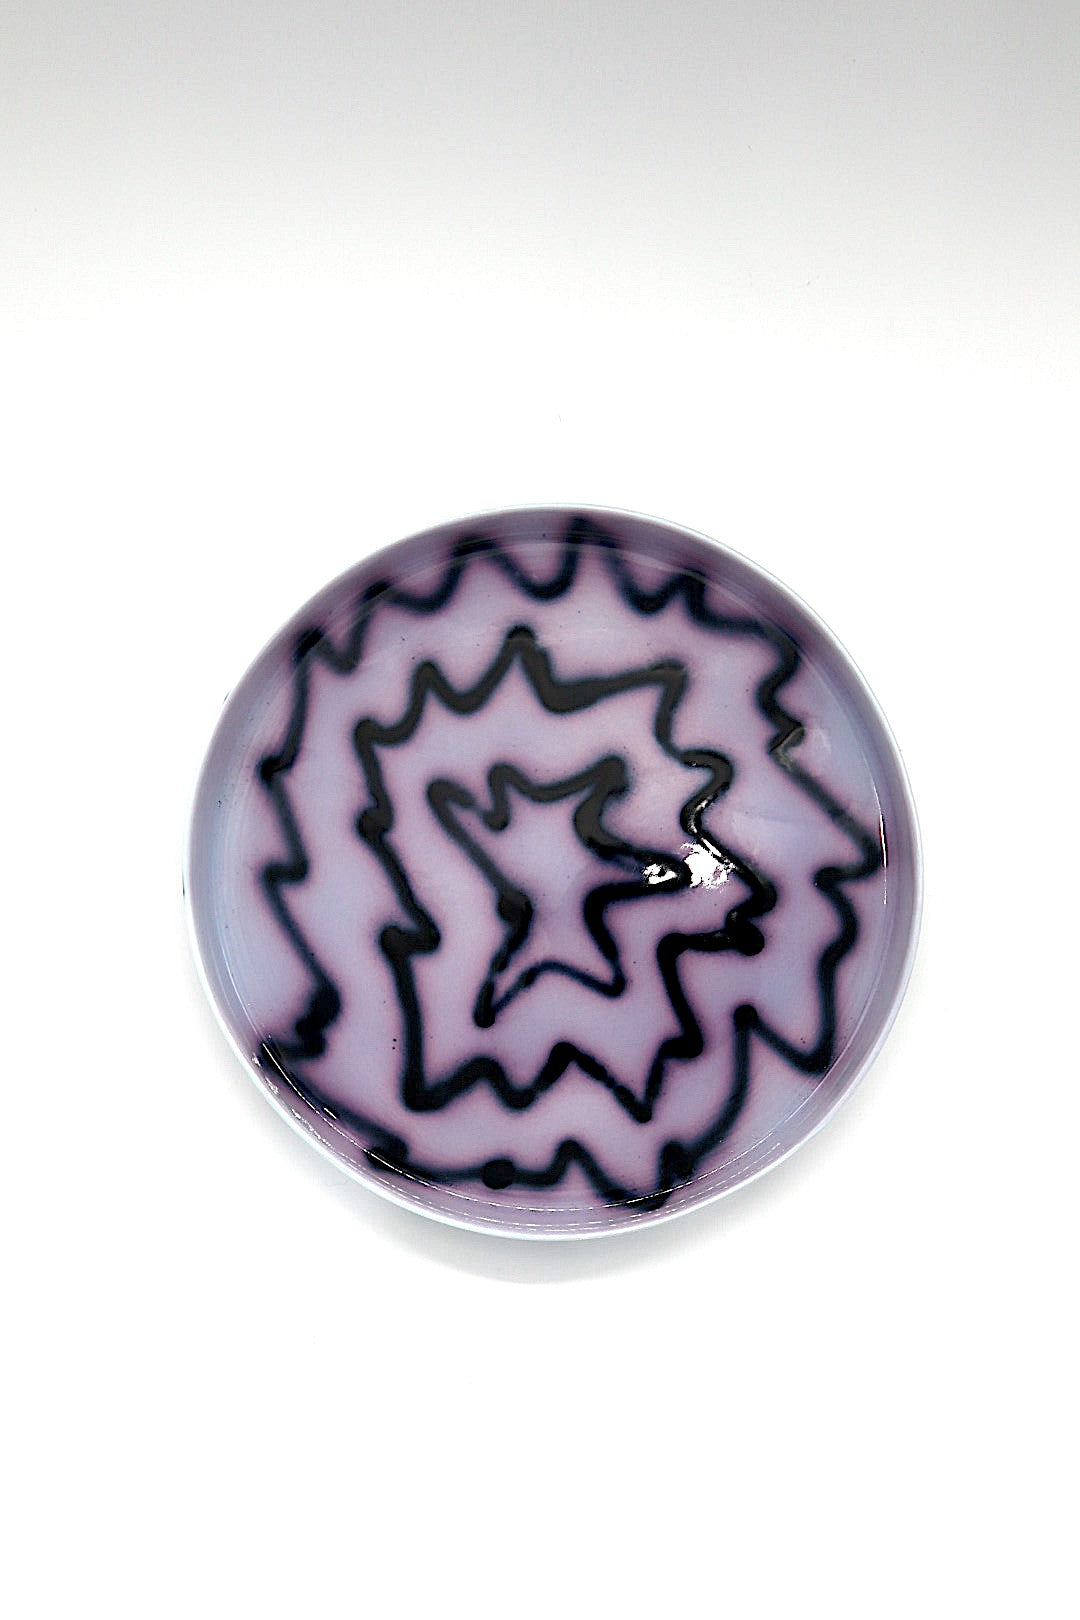 Small Tray by Frizbee Ceramics